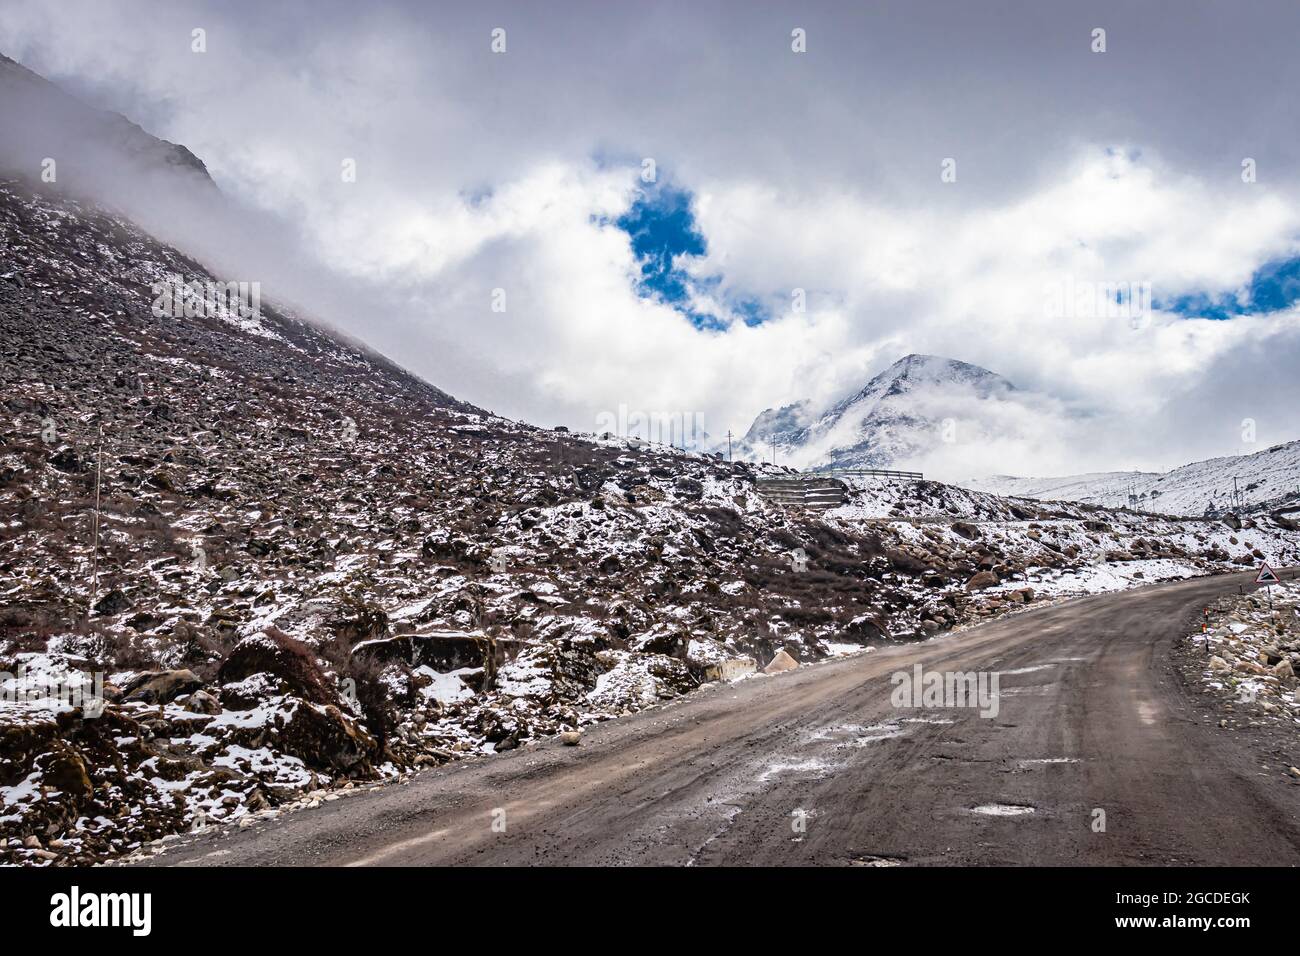 Isolierte asphaltierte Straße mit schneebedeckter Bergkulisse und erstaunlichem Himmel am Morgen Bild wird am sela-Pass tawang arunachal pradesh aufgenommen. Stockfoto